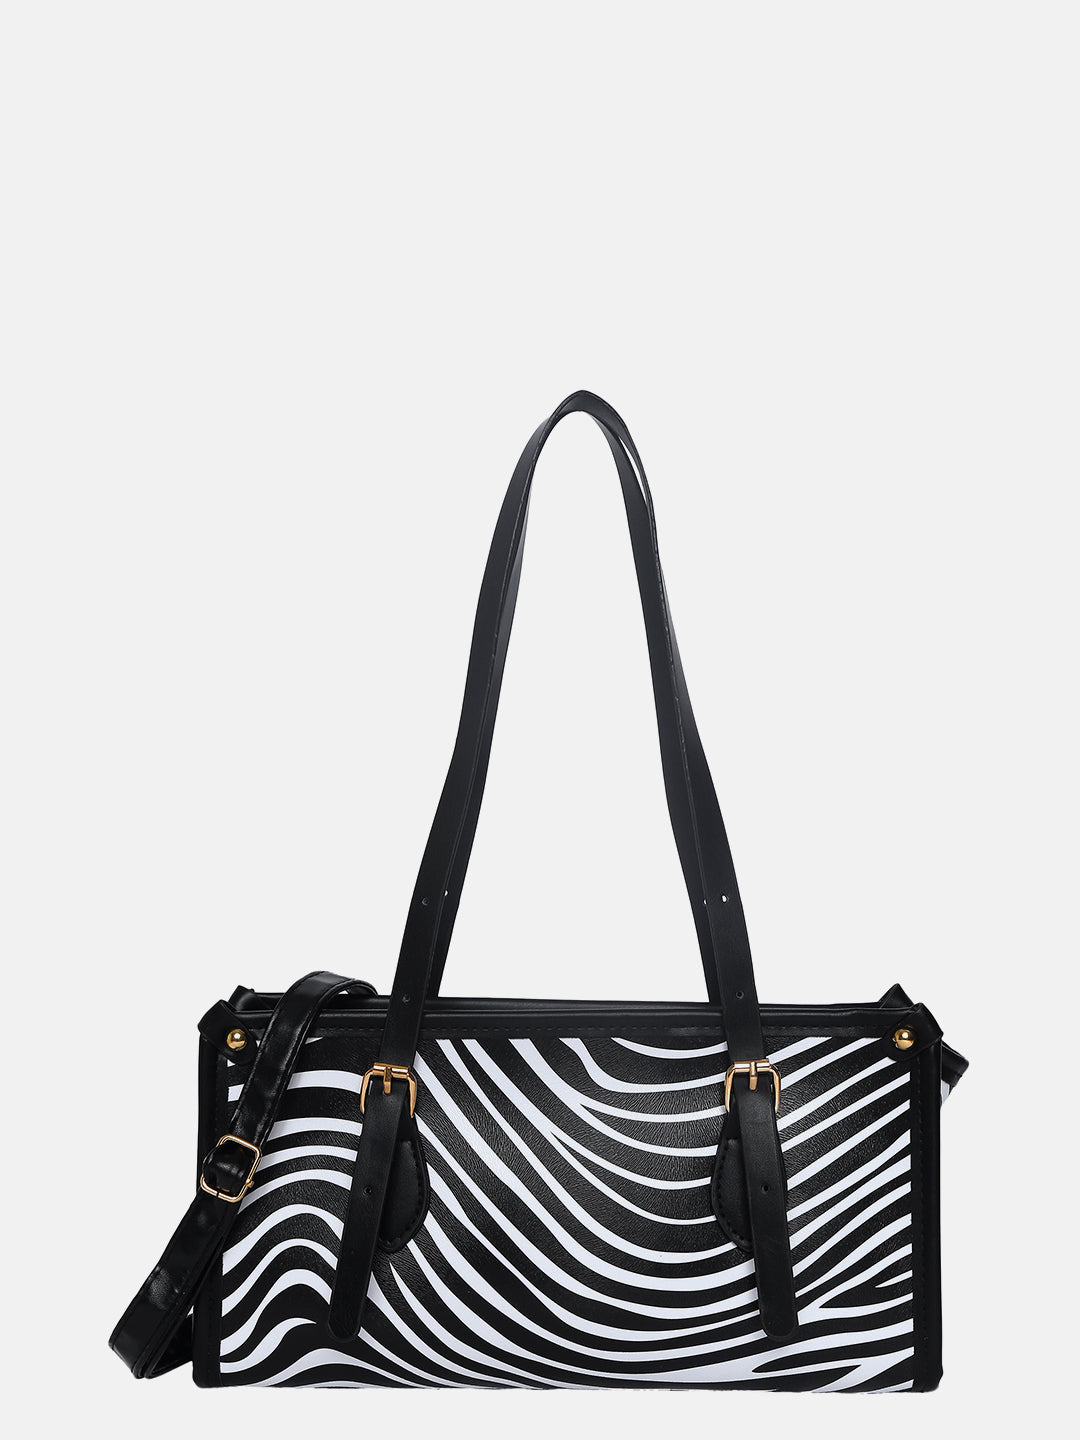 Zebra Black & White Handbag